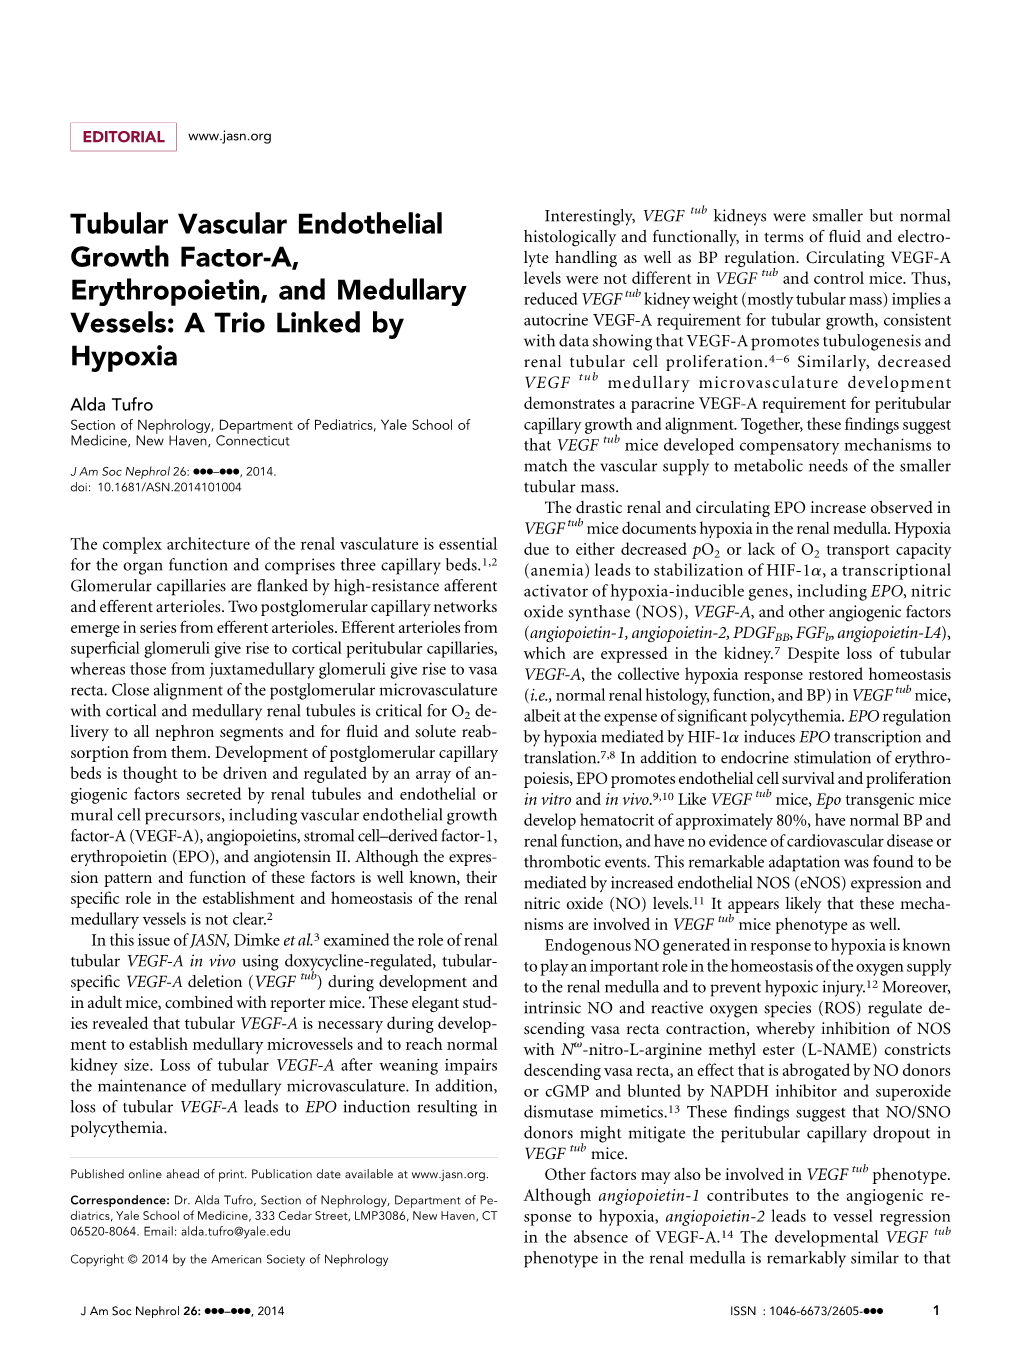 Tubular Vascular Endothelial Growth Factor-A, Erythropoietin